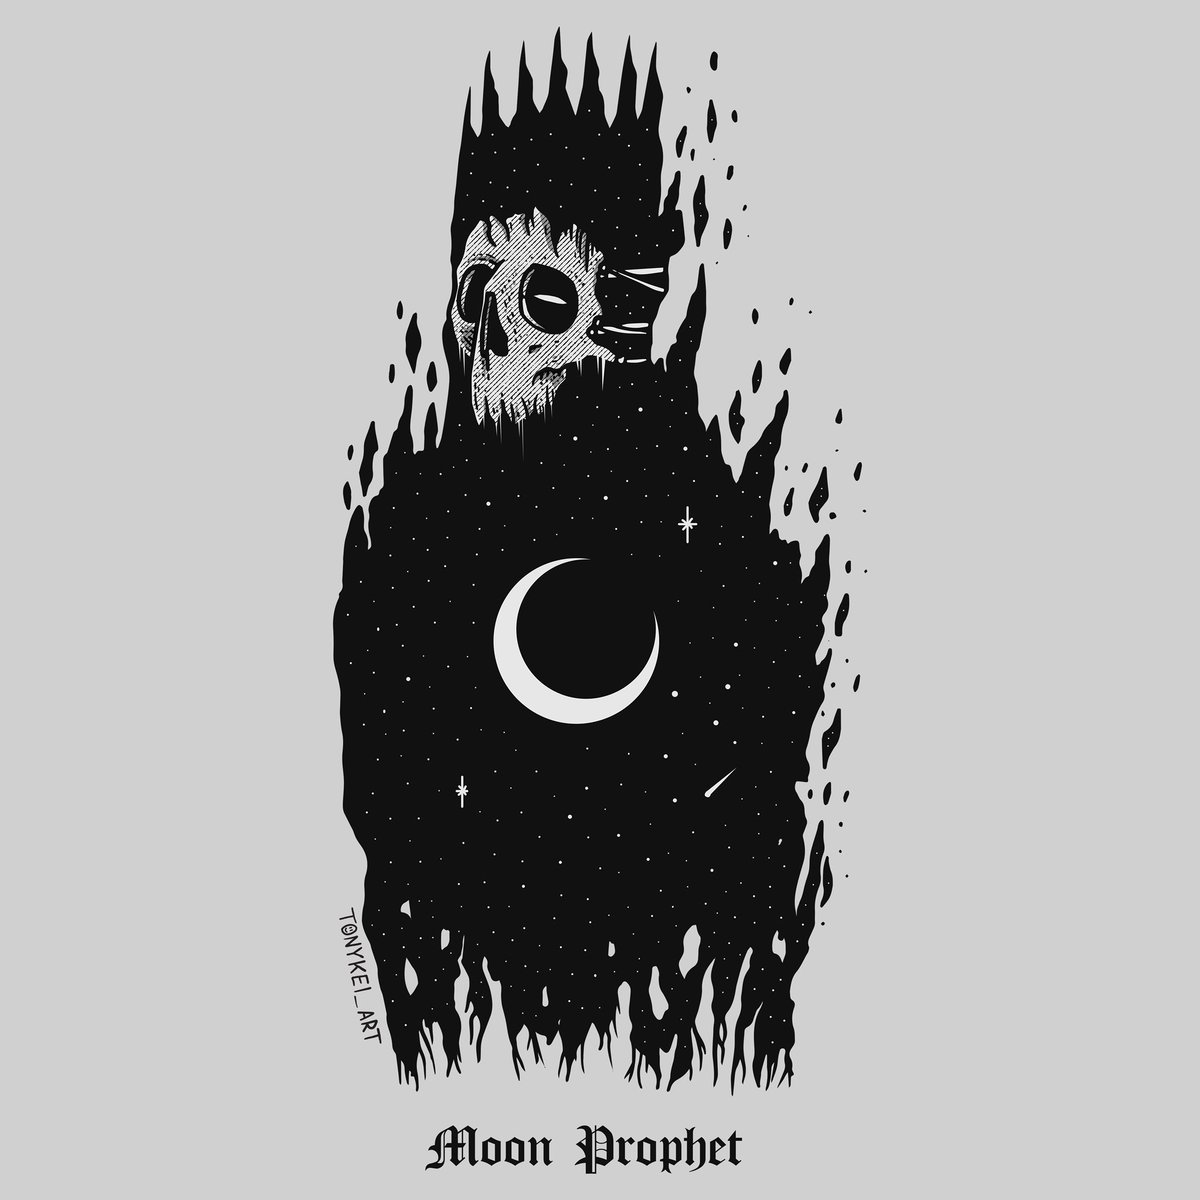 Moon Prophet

#gothicart #darkart #skull #skeleton #illustration #ilustracion #digitalart #blackworkers #onlydarkart